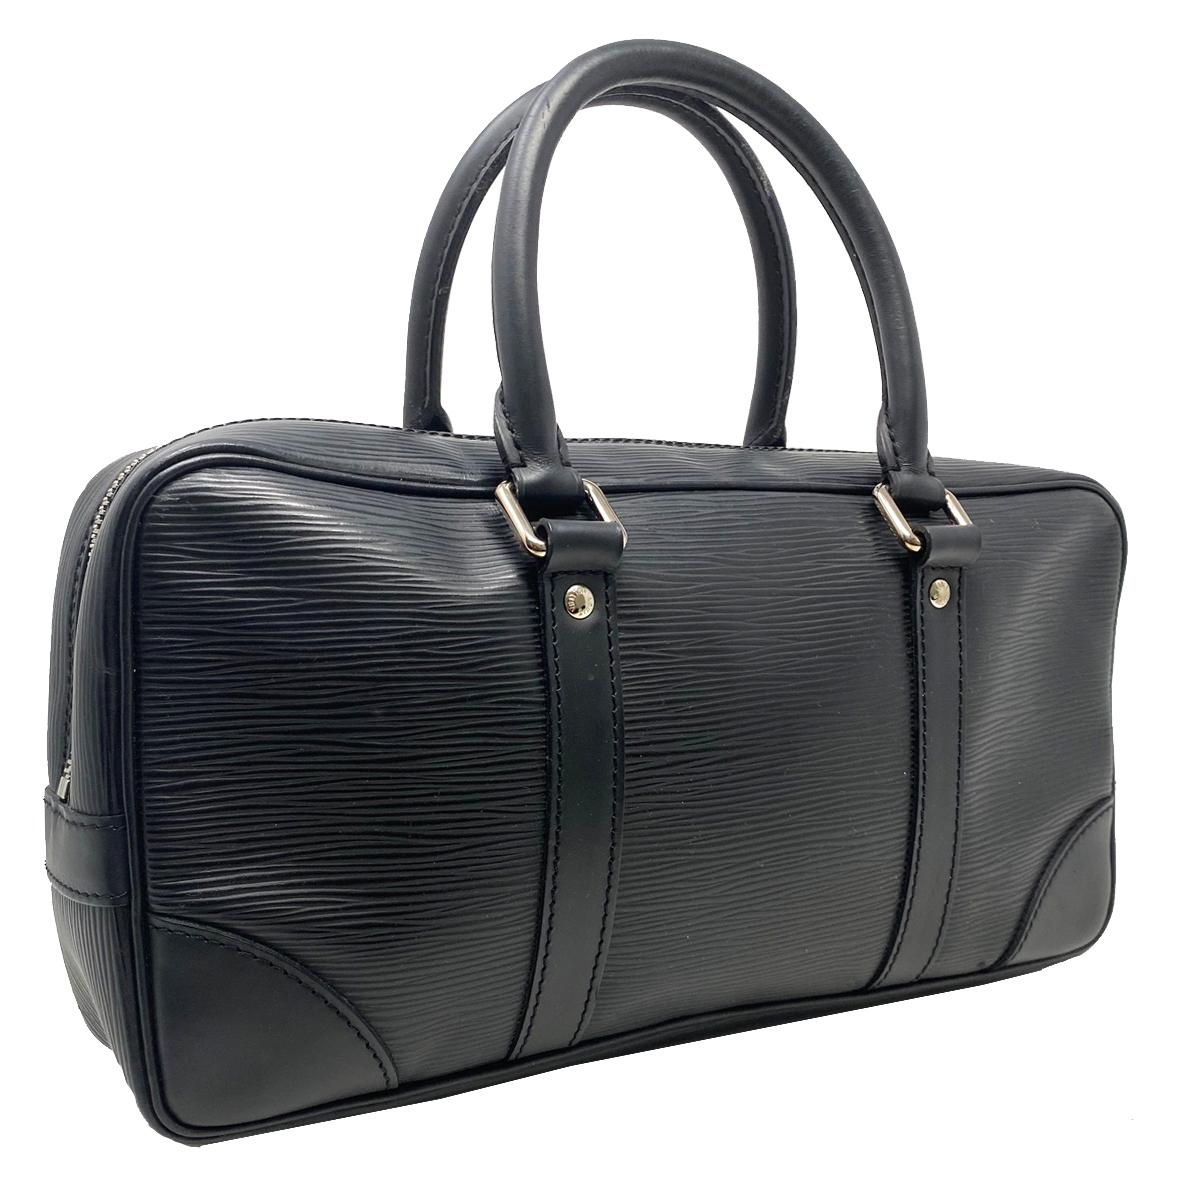 Company-Louis Vuitton
Model-Epi Leather Vivienne Black Handbag 
Color-Black  
Date Code-BA0055
Material-Epi Leather
Measurements-12.25